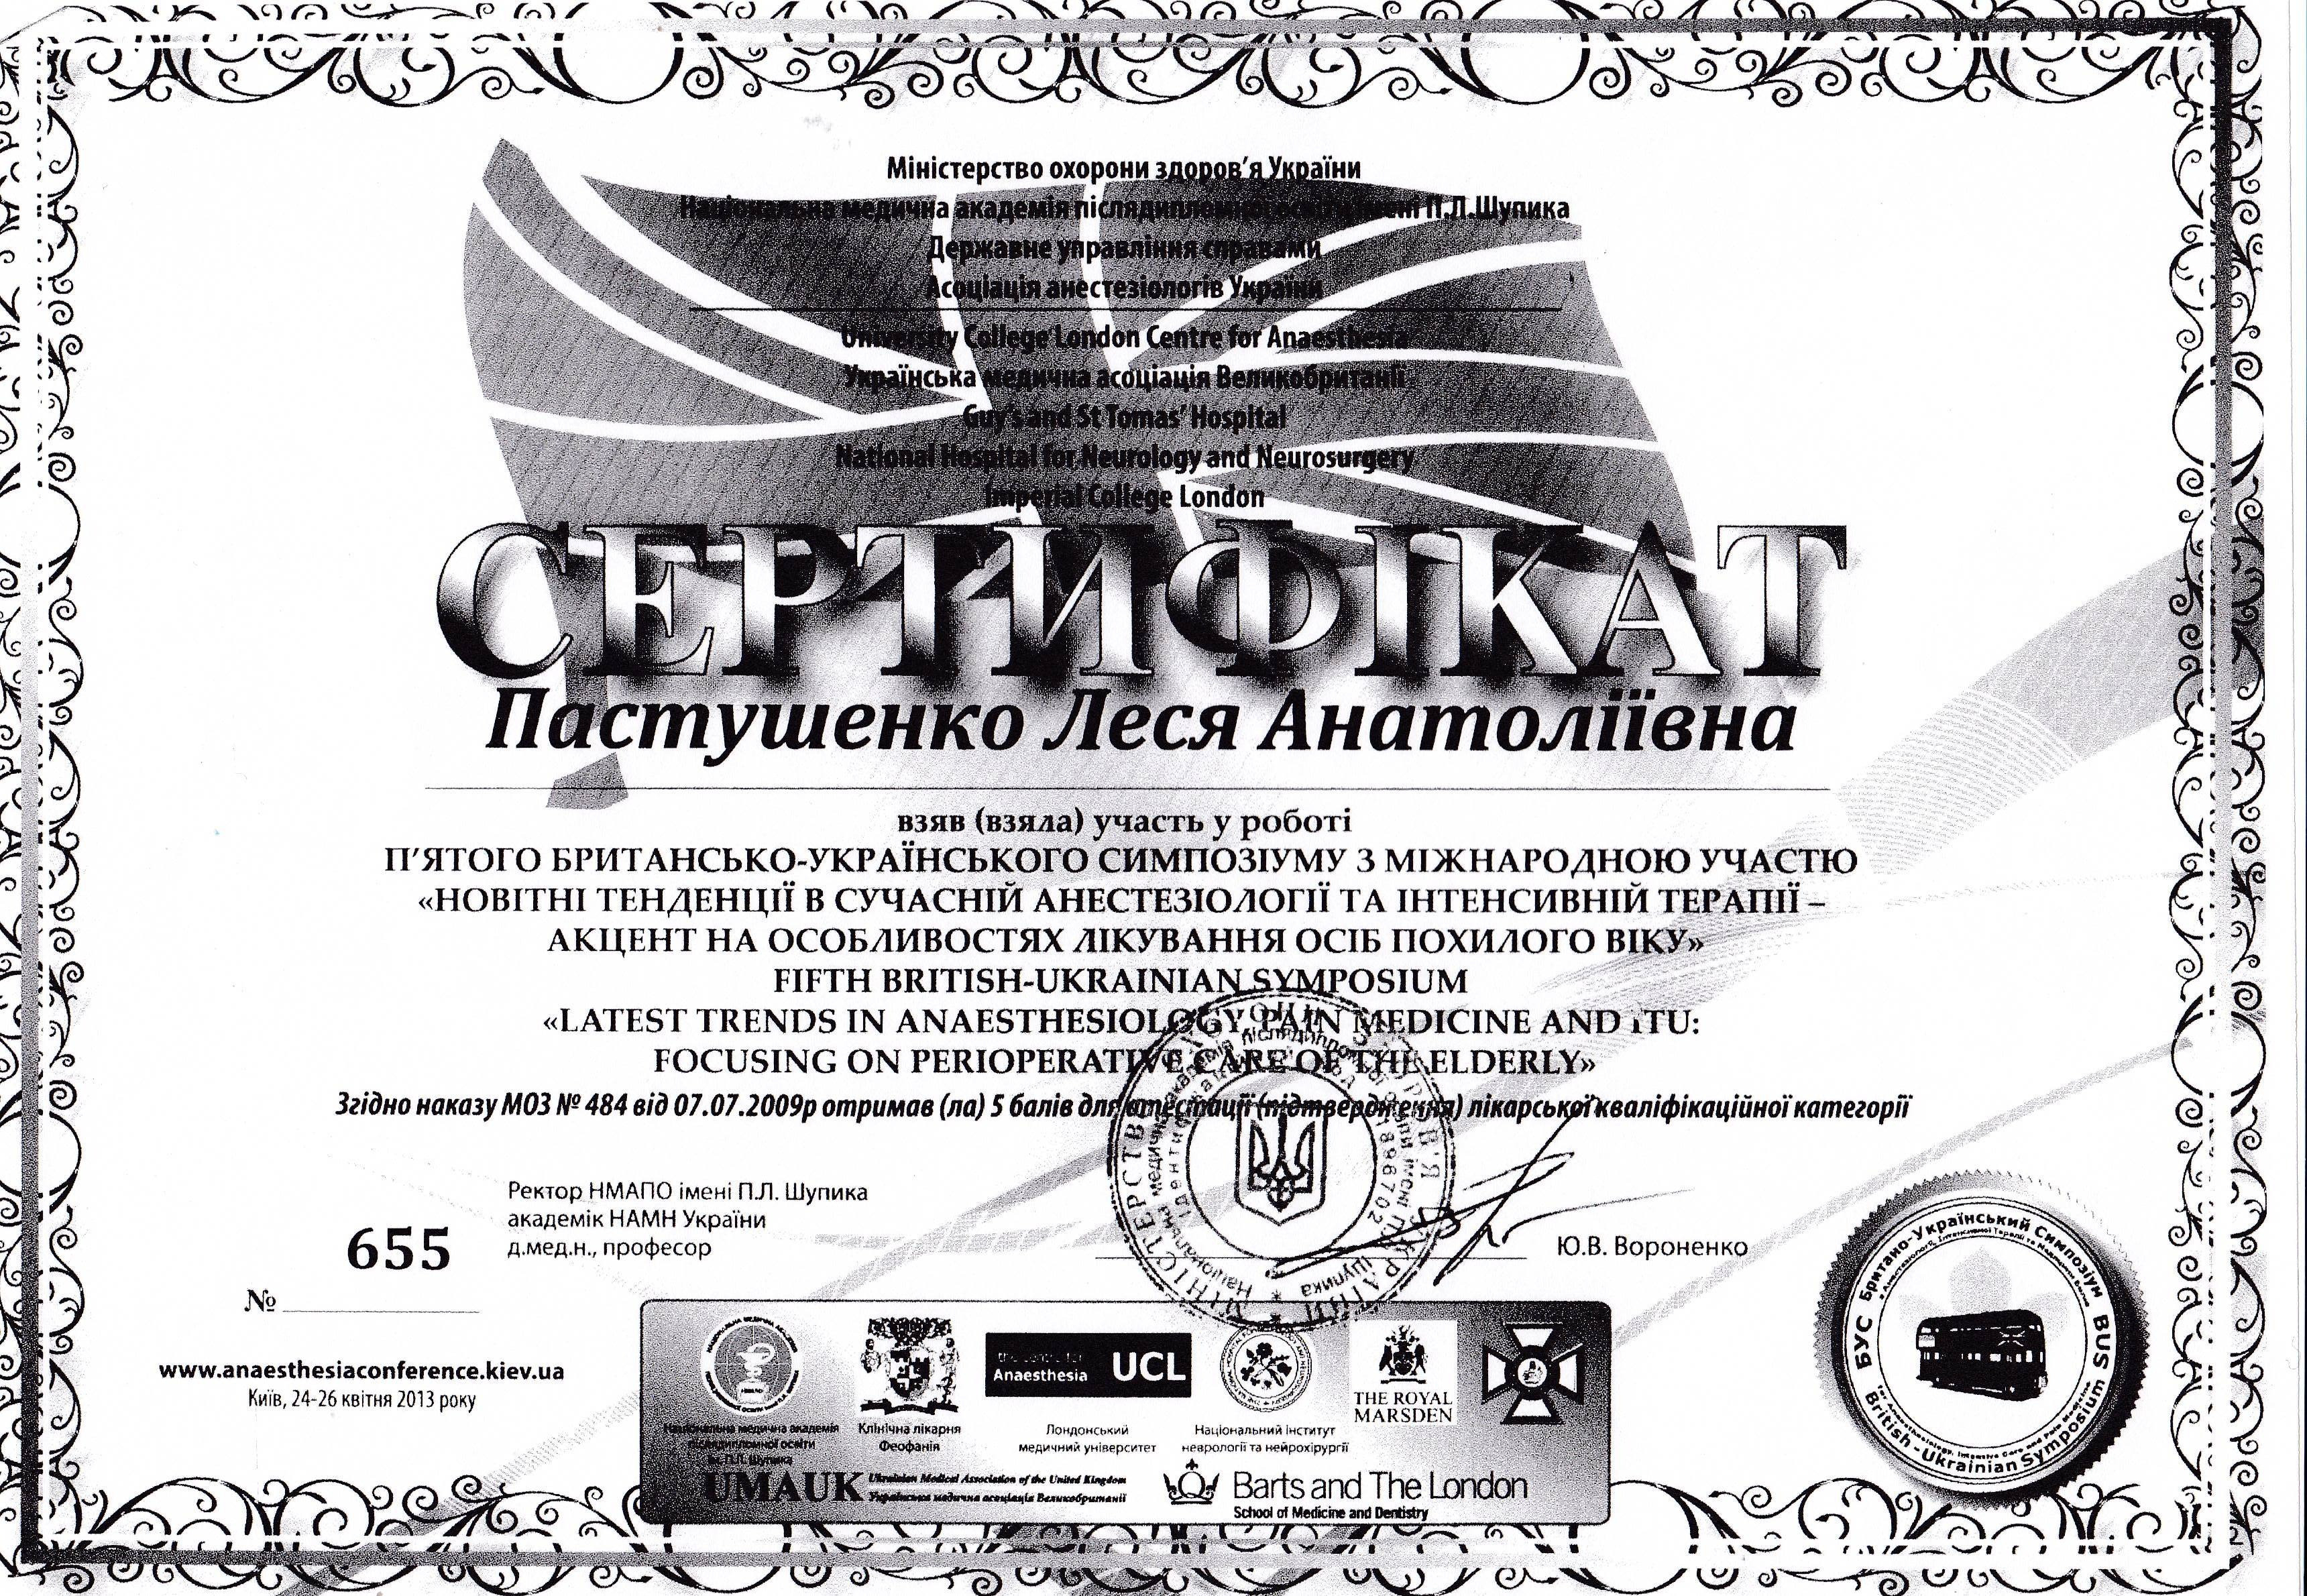 Сертификат об участии в симпозиуме 